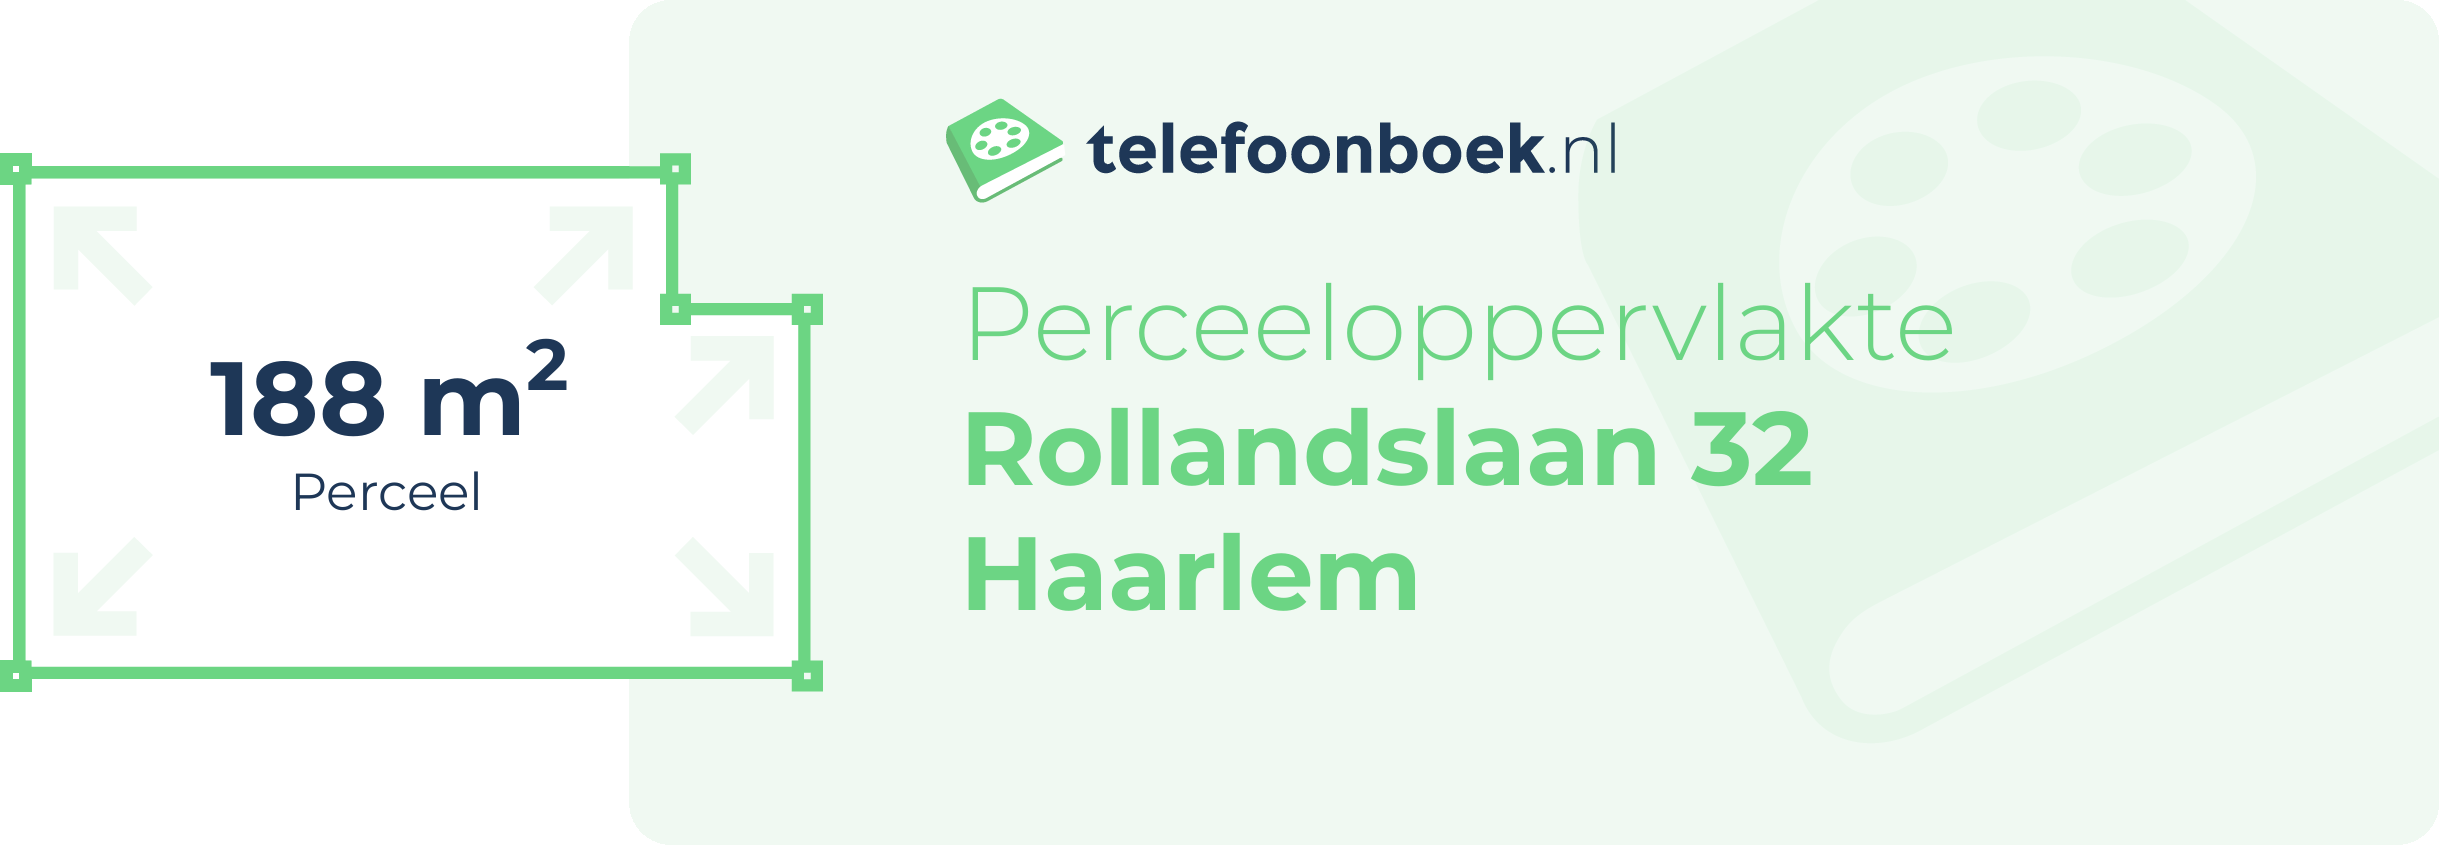 Perceeloppervlakte Rollandslaan 32 Haarlem